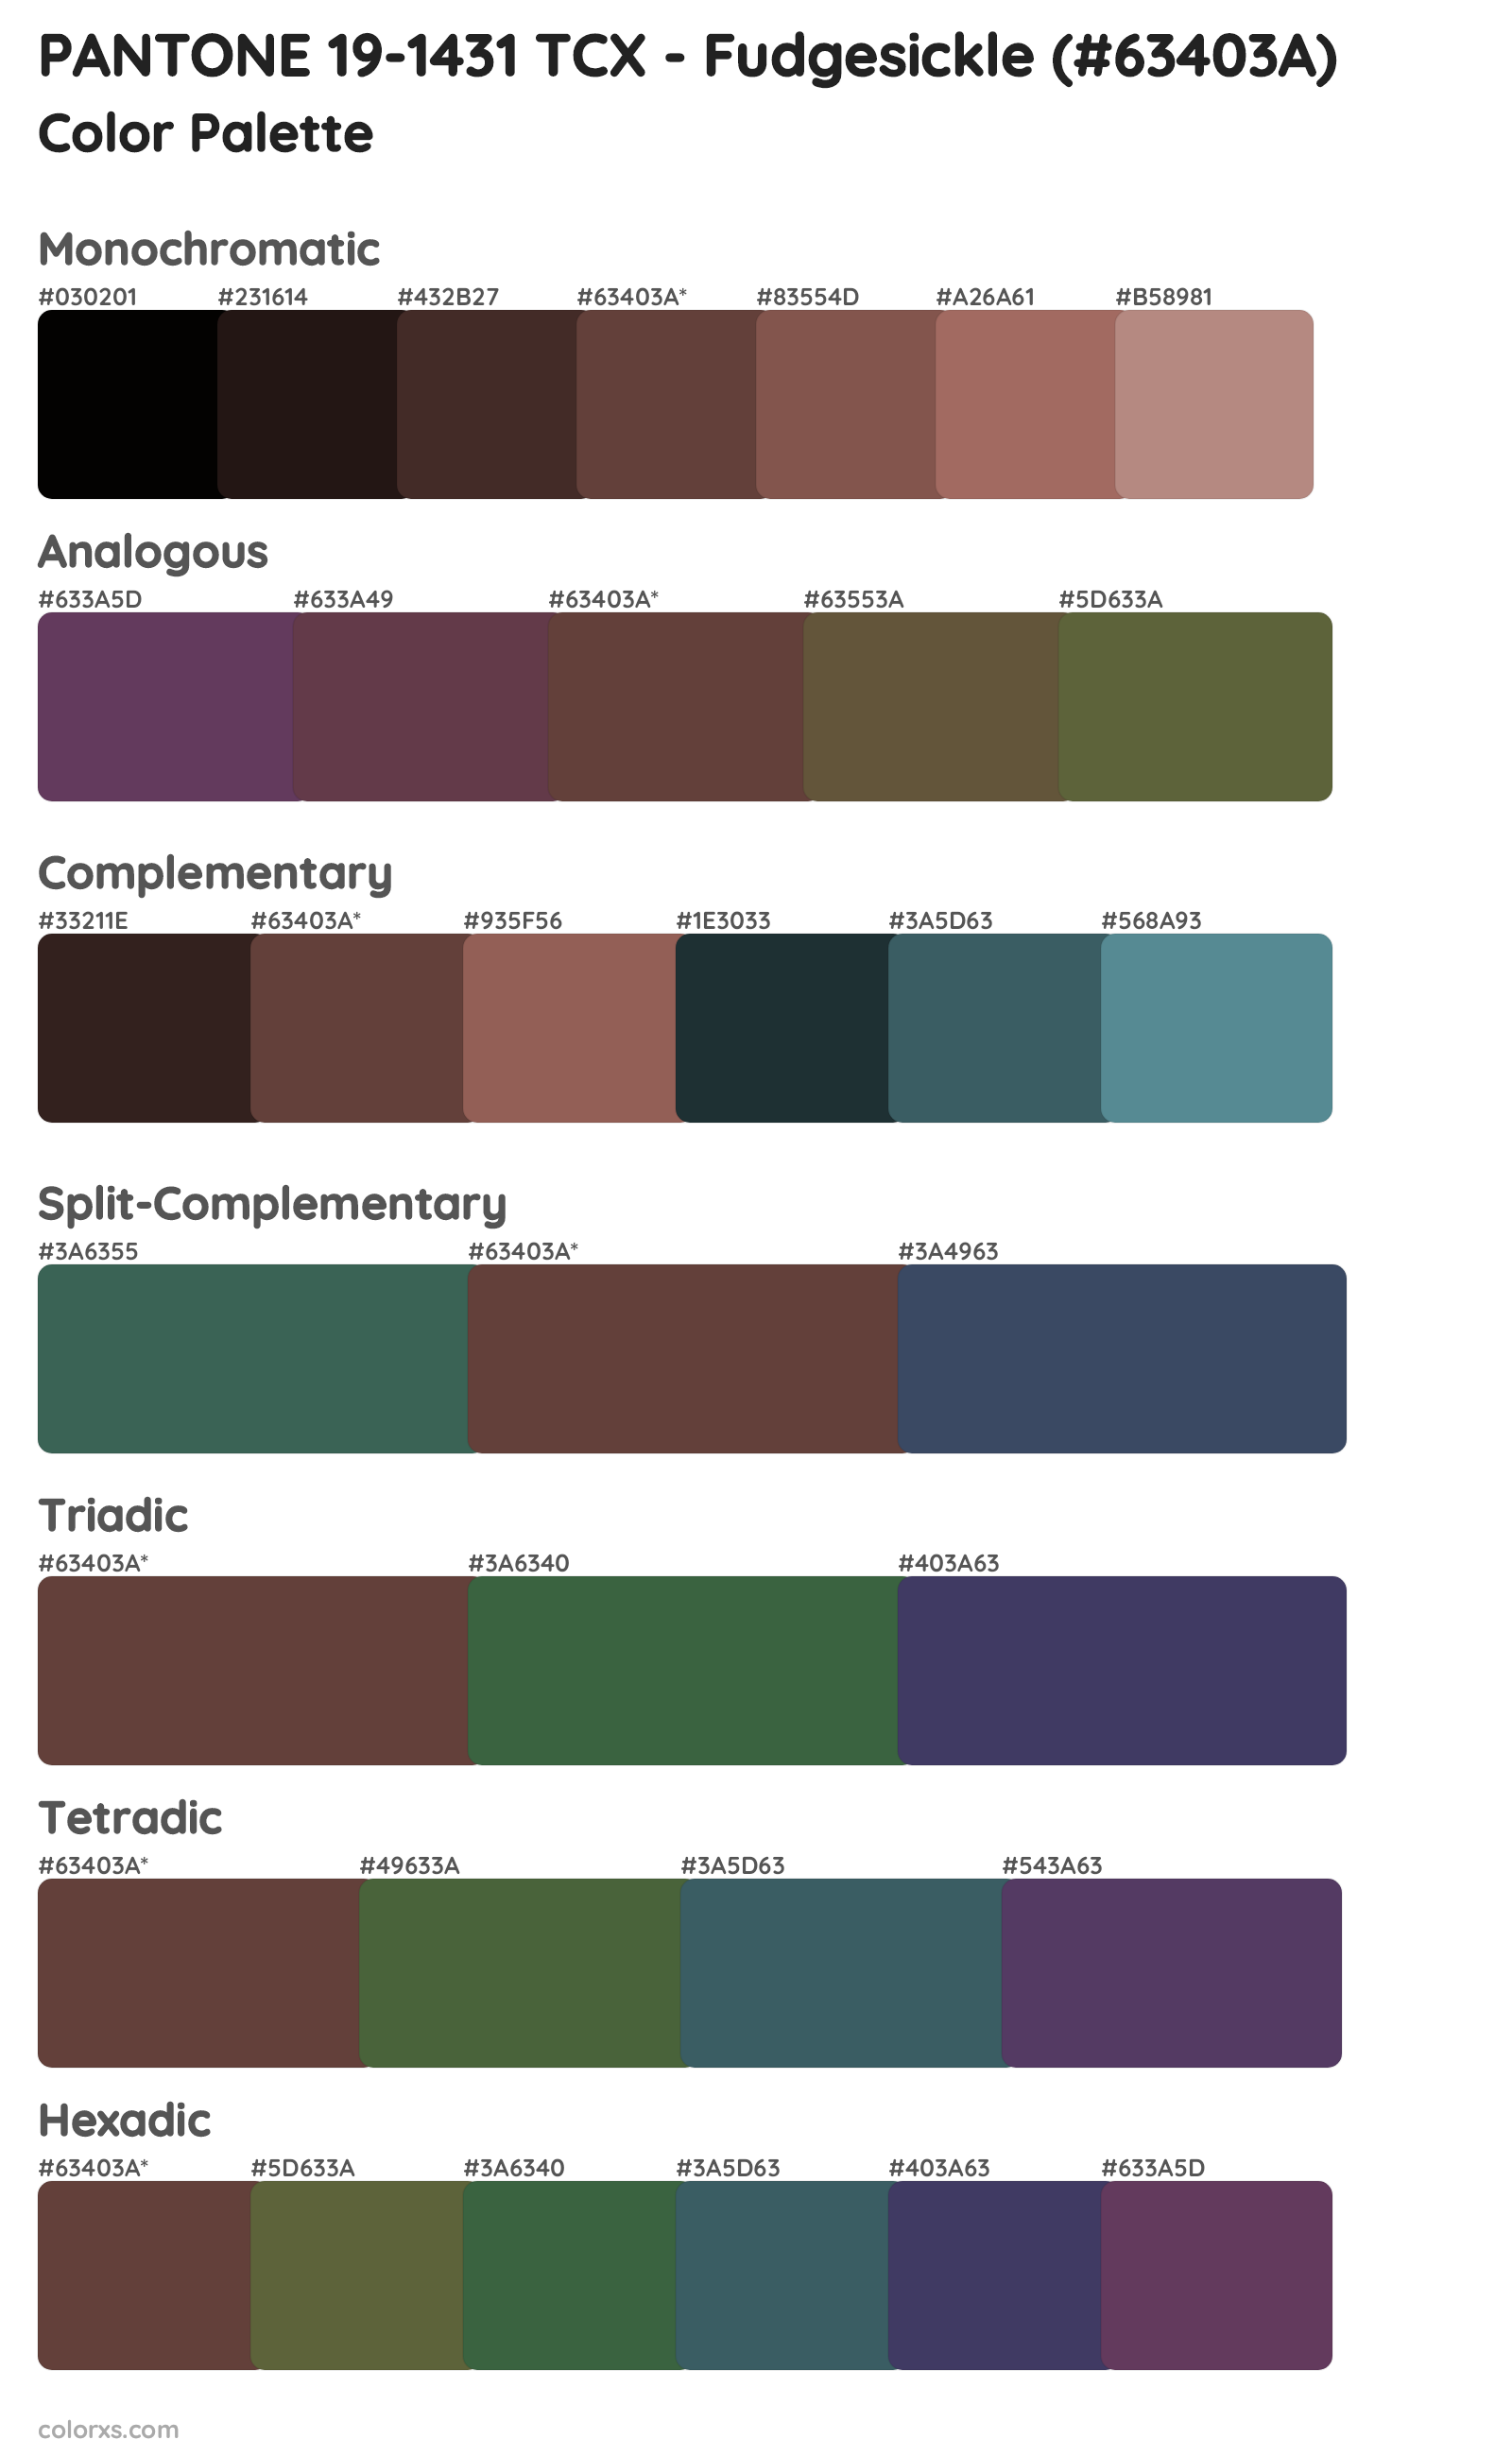 PANTONE 19-1431 TCX - Fudgesickle Color Scheme Palettes